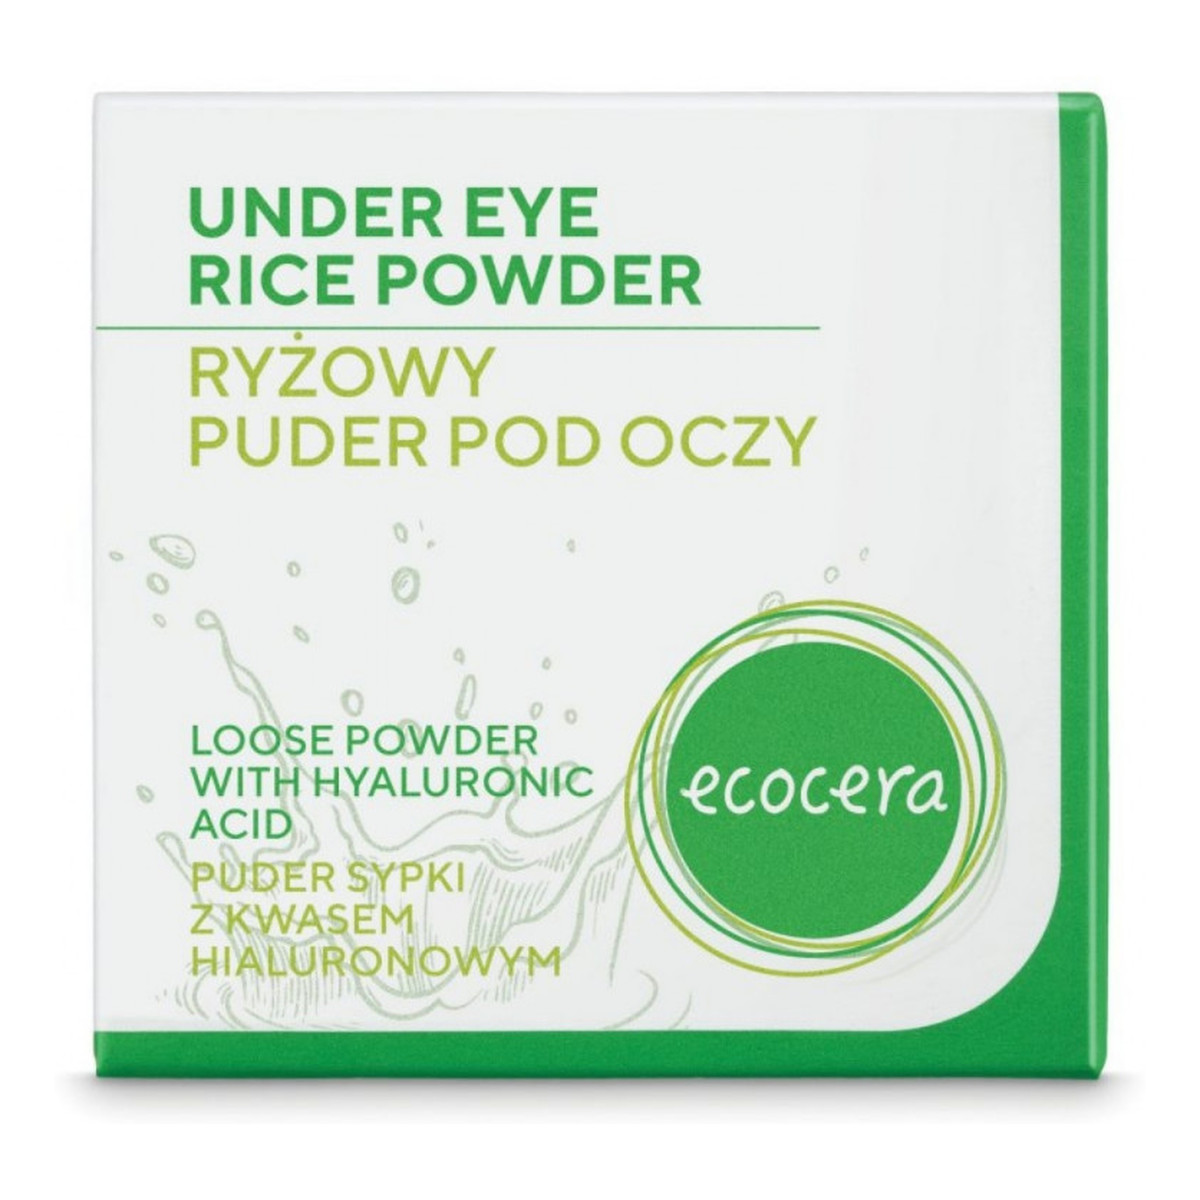 Ecocera Under Eye Rice Powder ryżowy puder pod oczy 4g